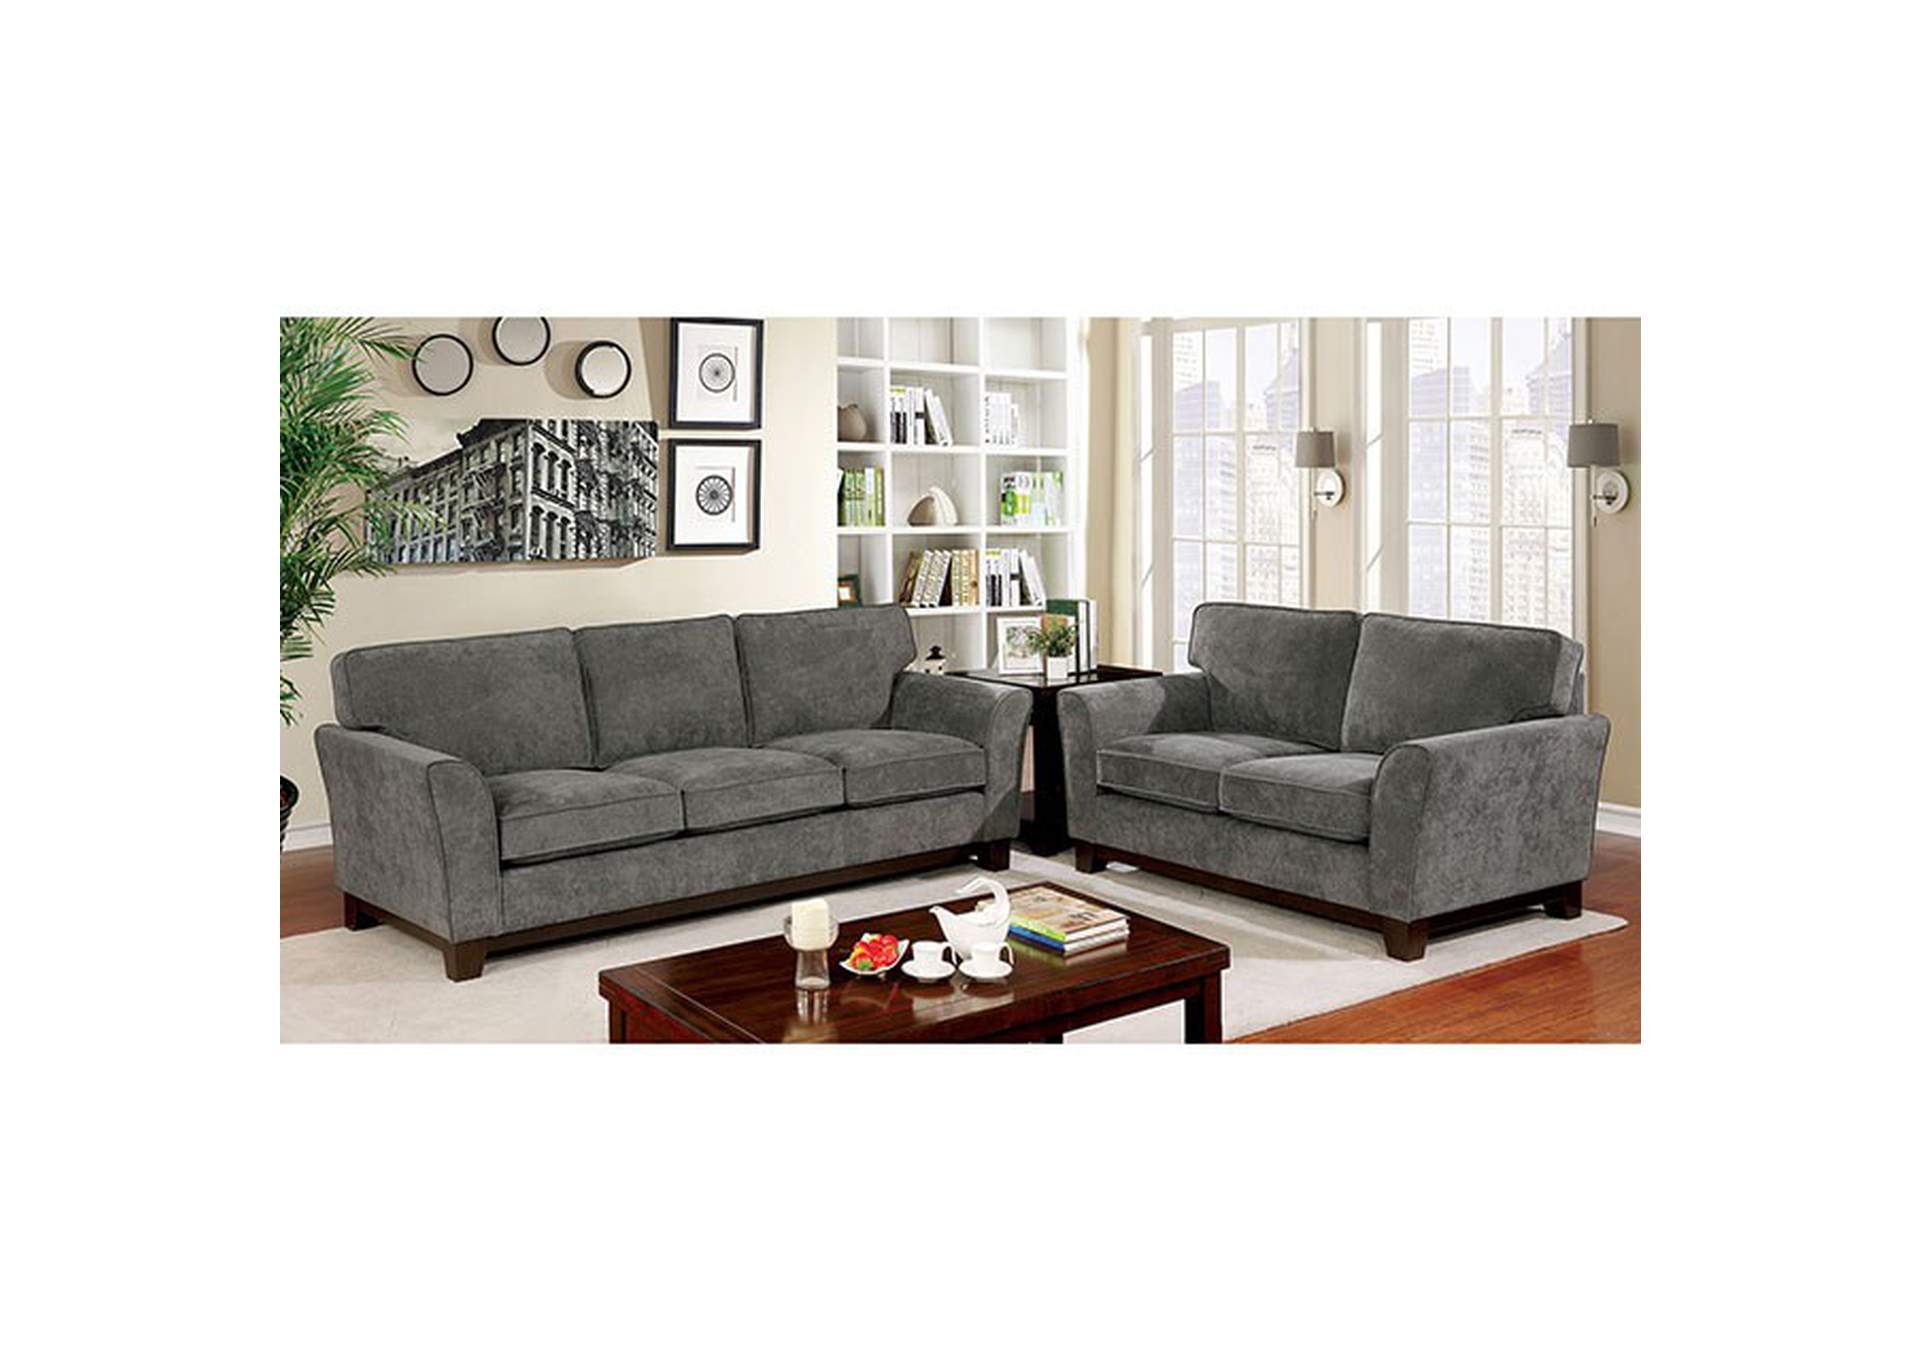 Caldicot Gray Sofa,Furniture of America